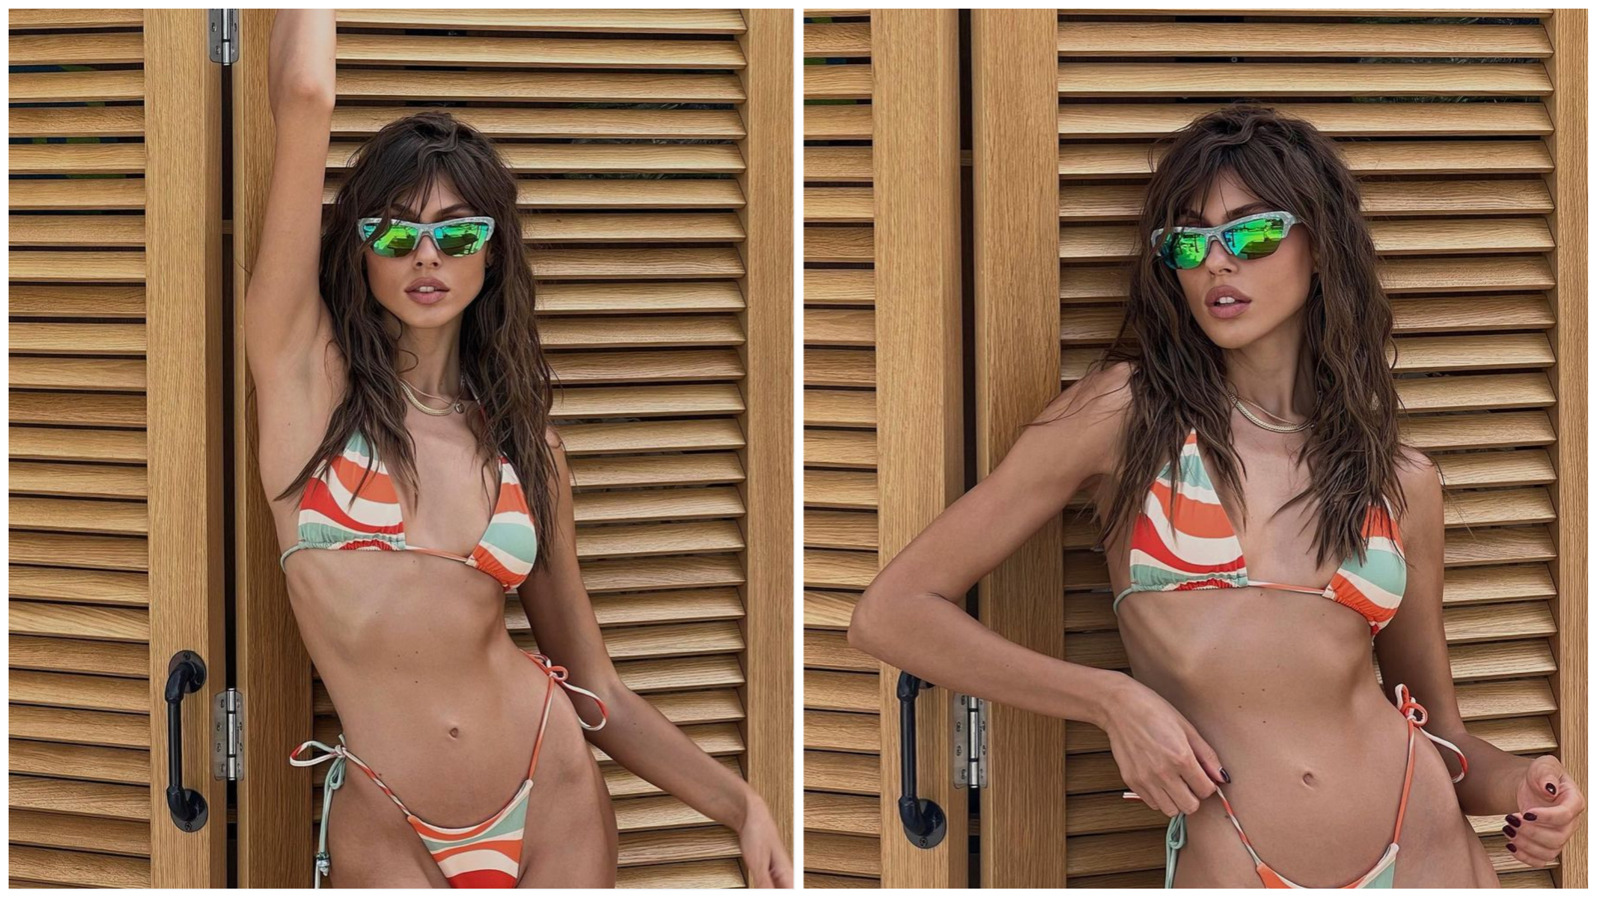 Bikini crush of the week: Svetlana Bjelan